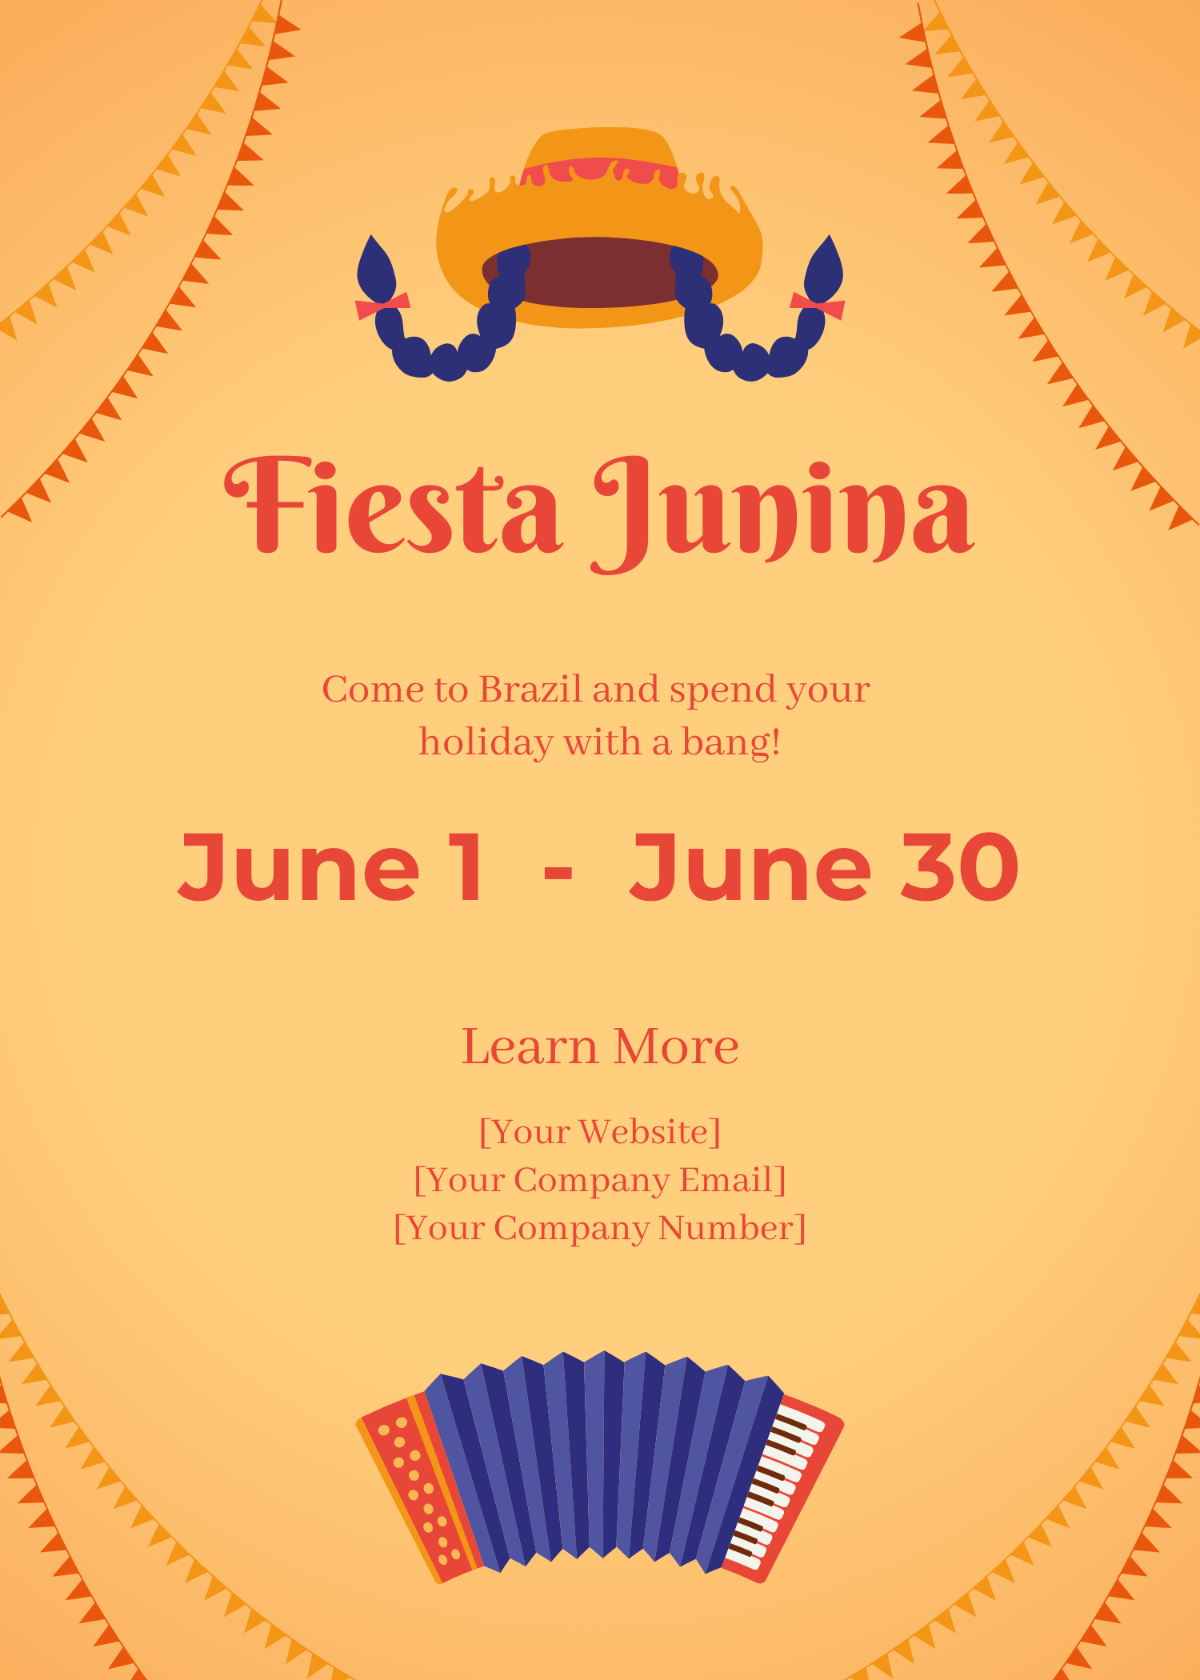 Free Festa Junina Holiday Invitation Template